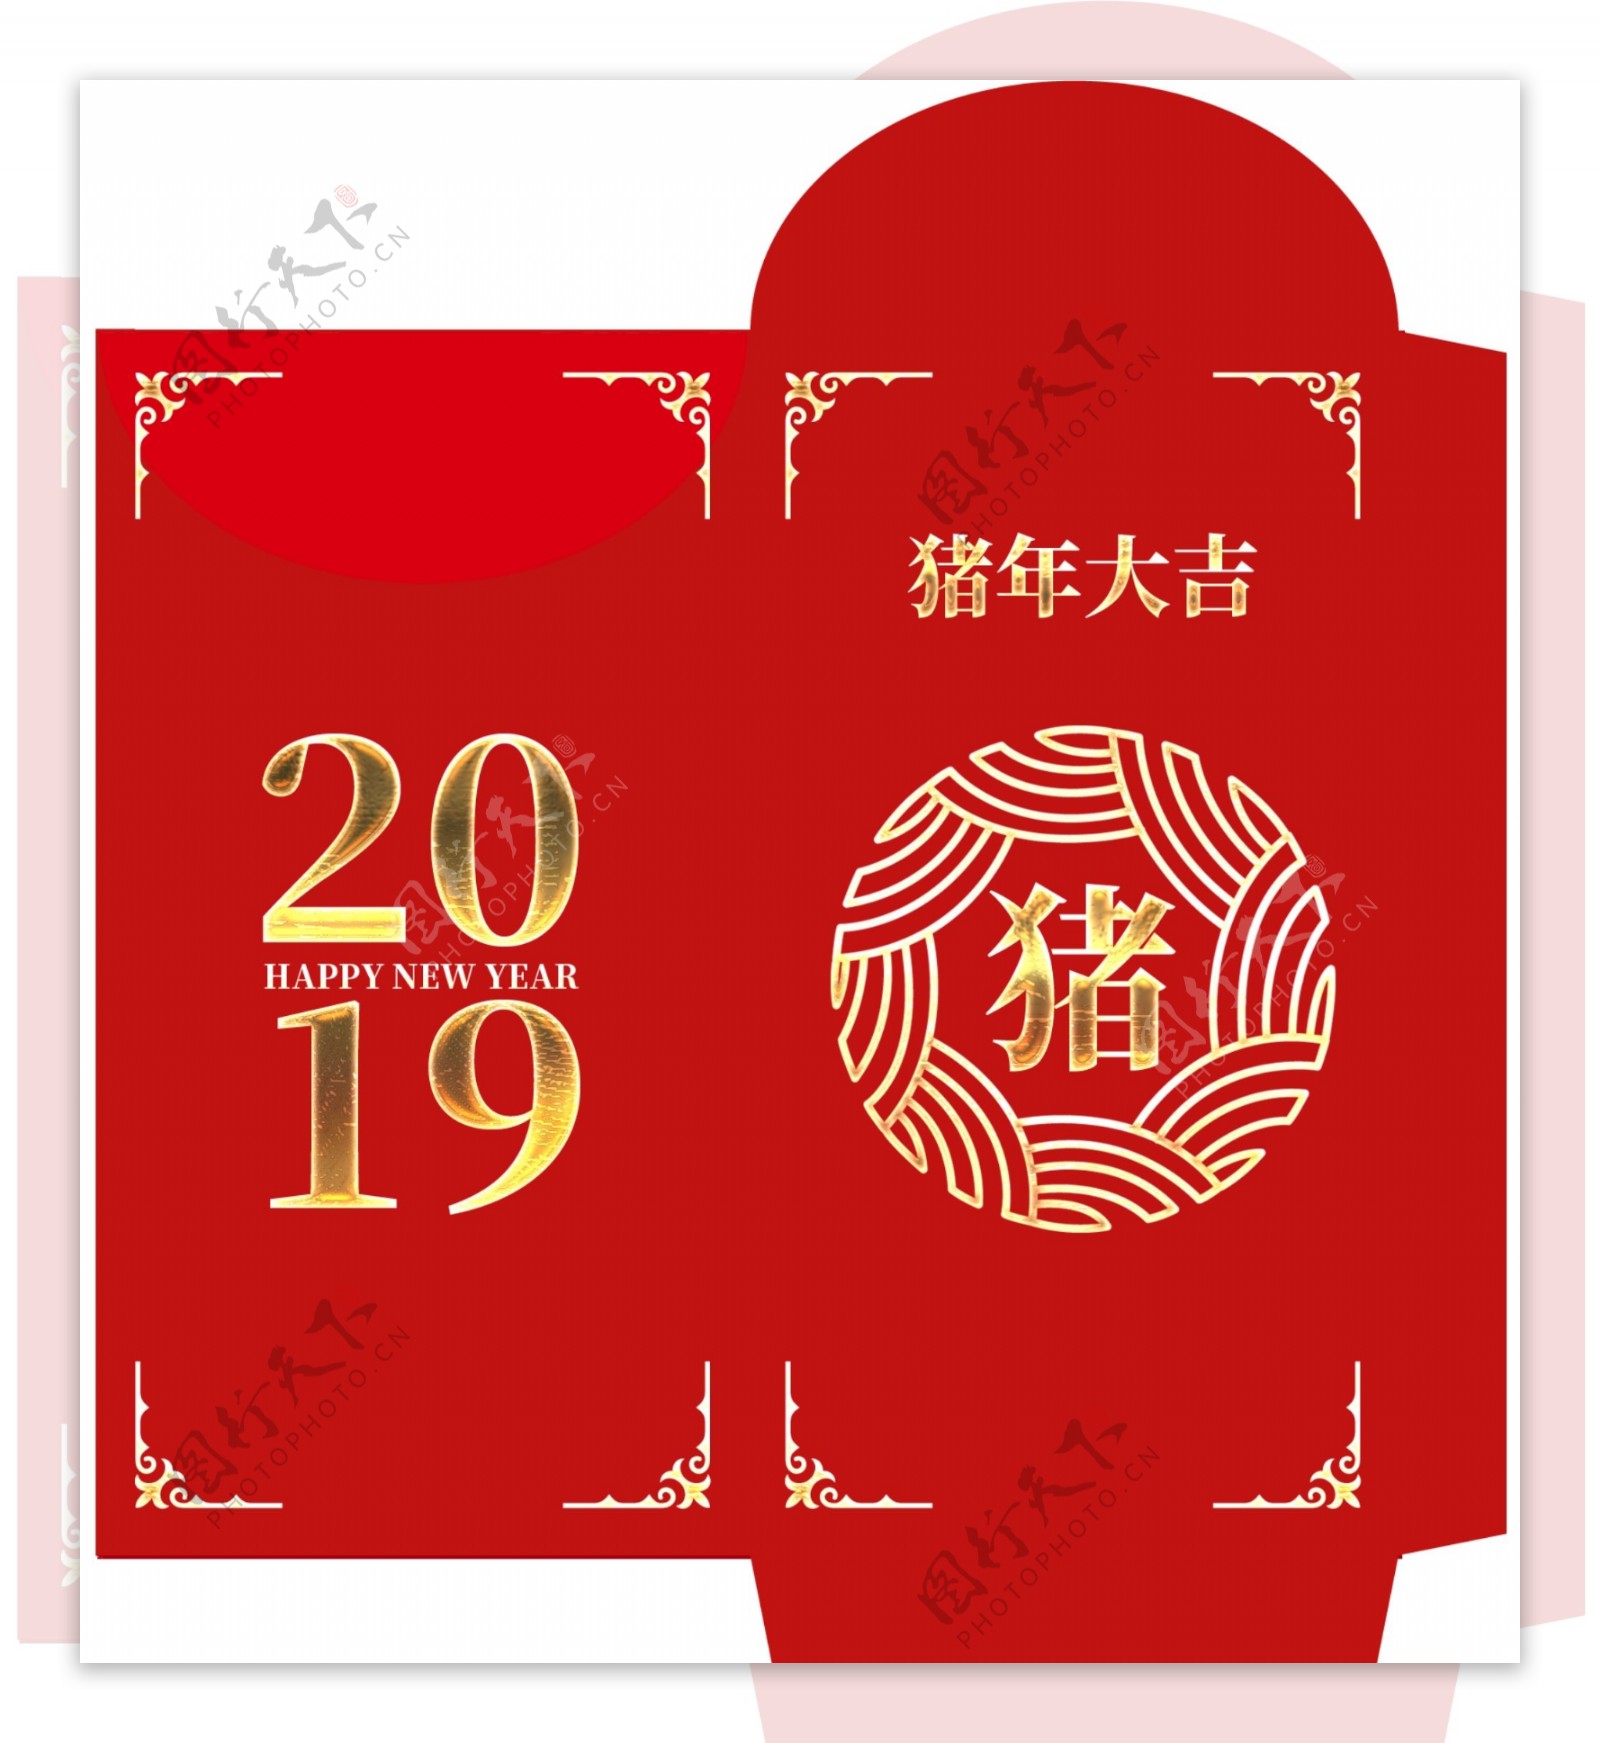 2019红色猪年红包模版设计